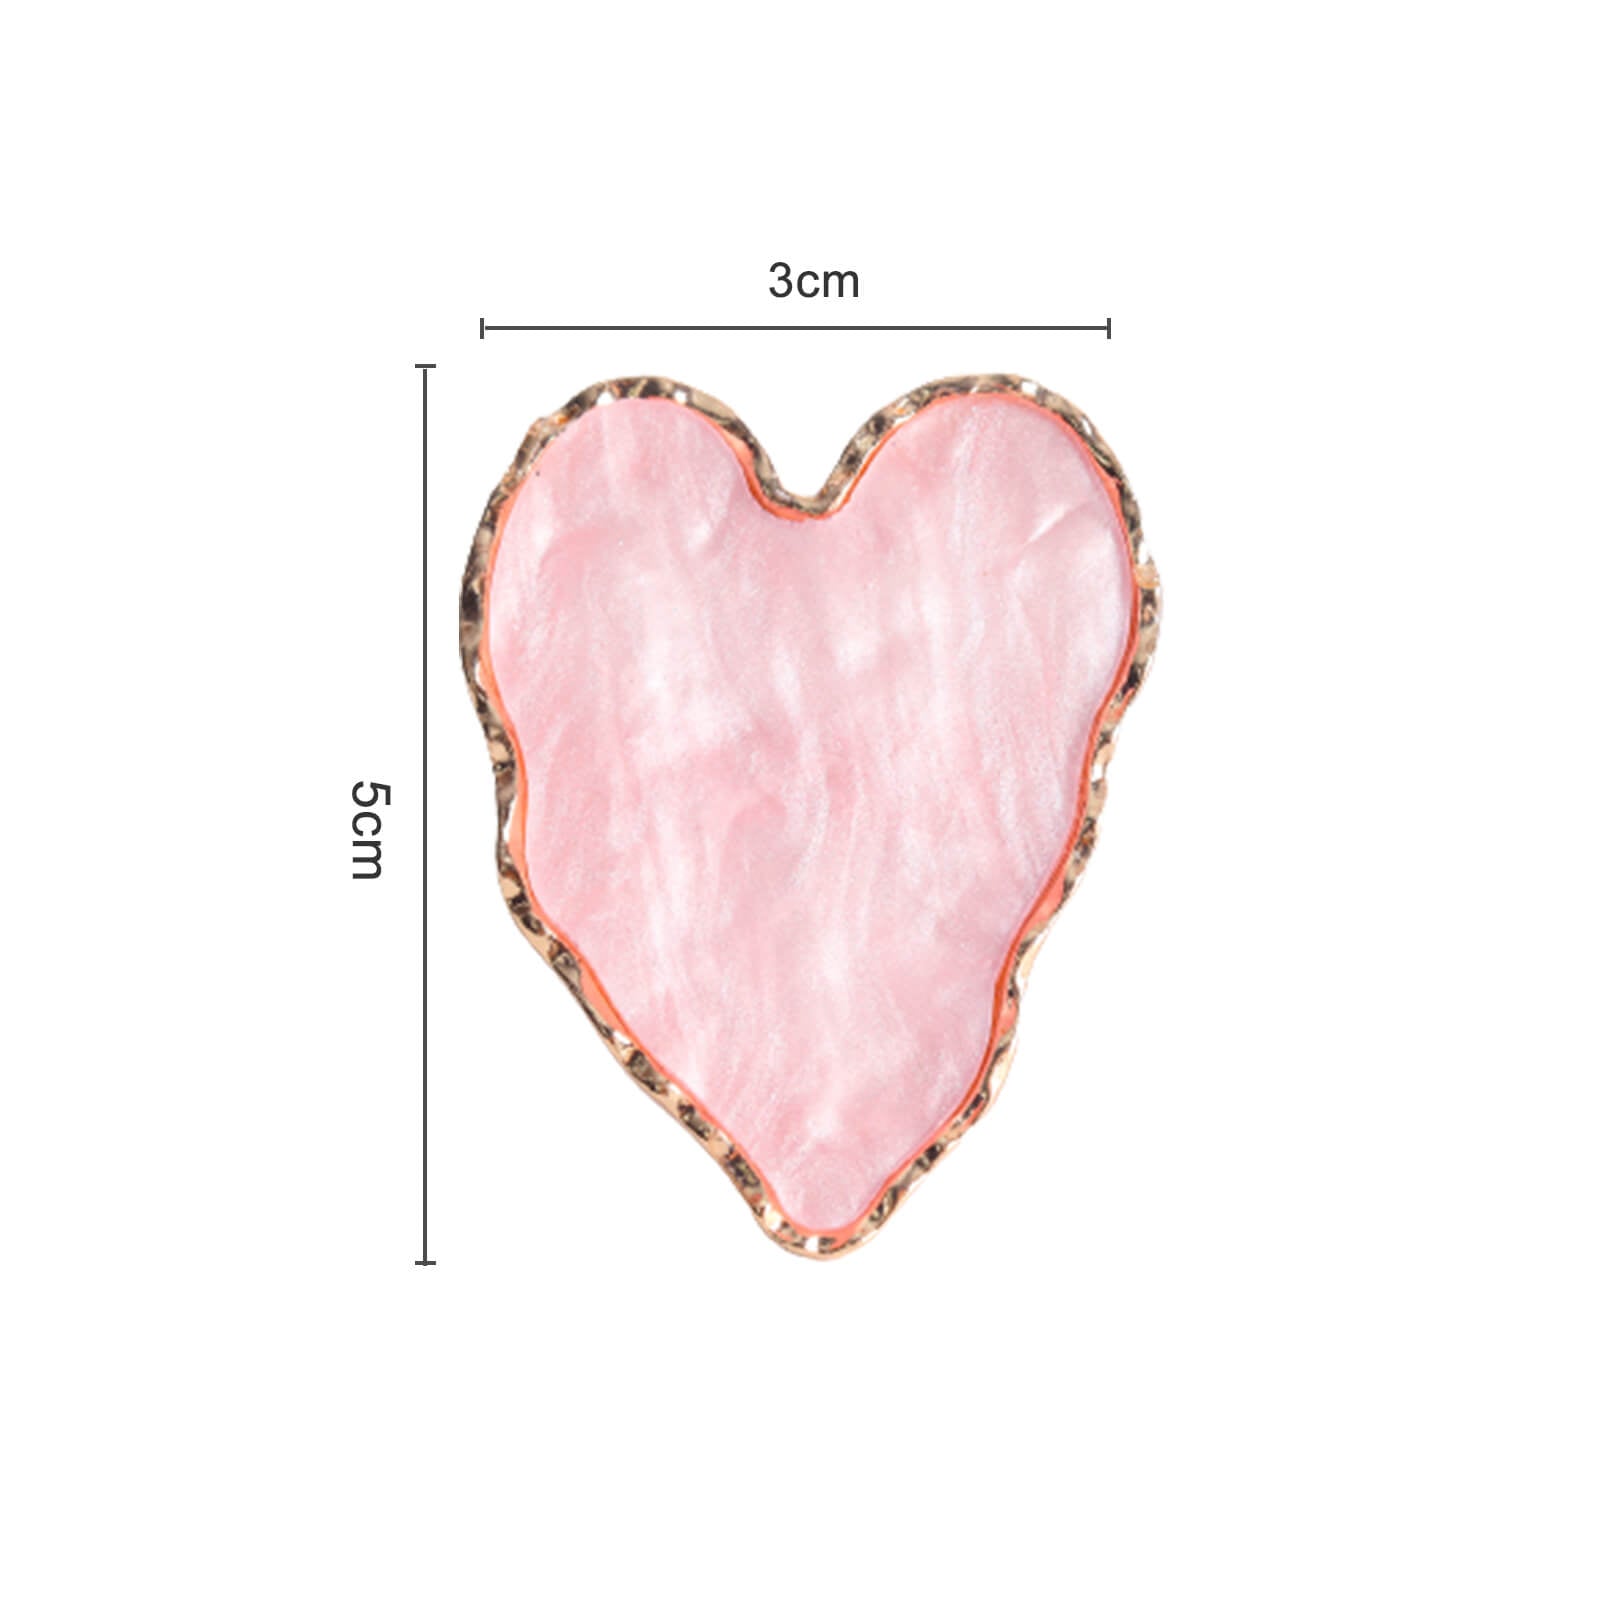    nail-art-palette-heart-size